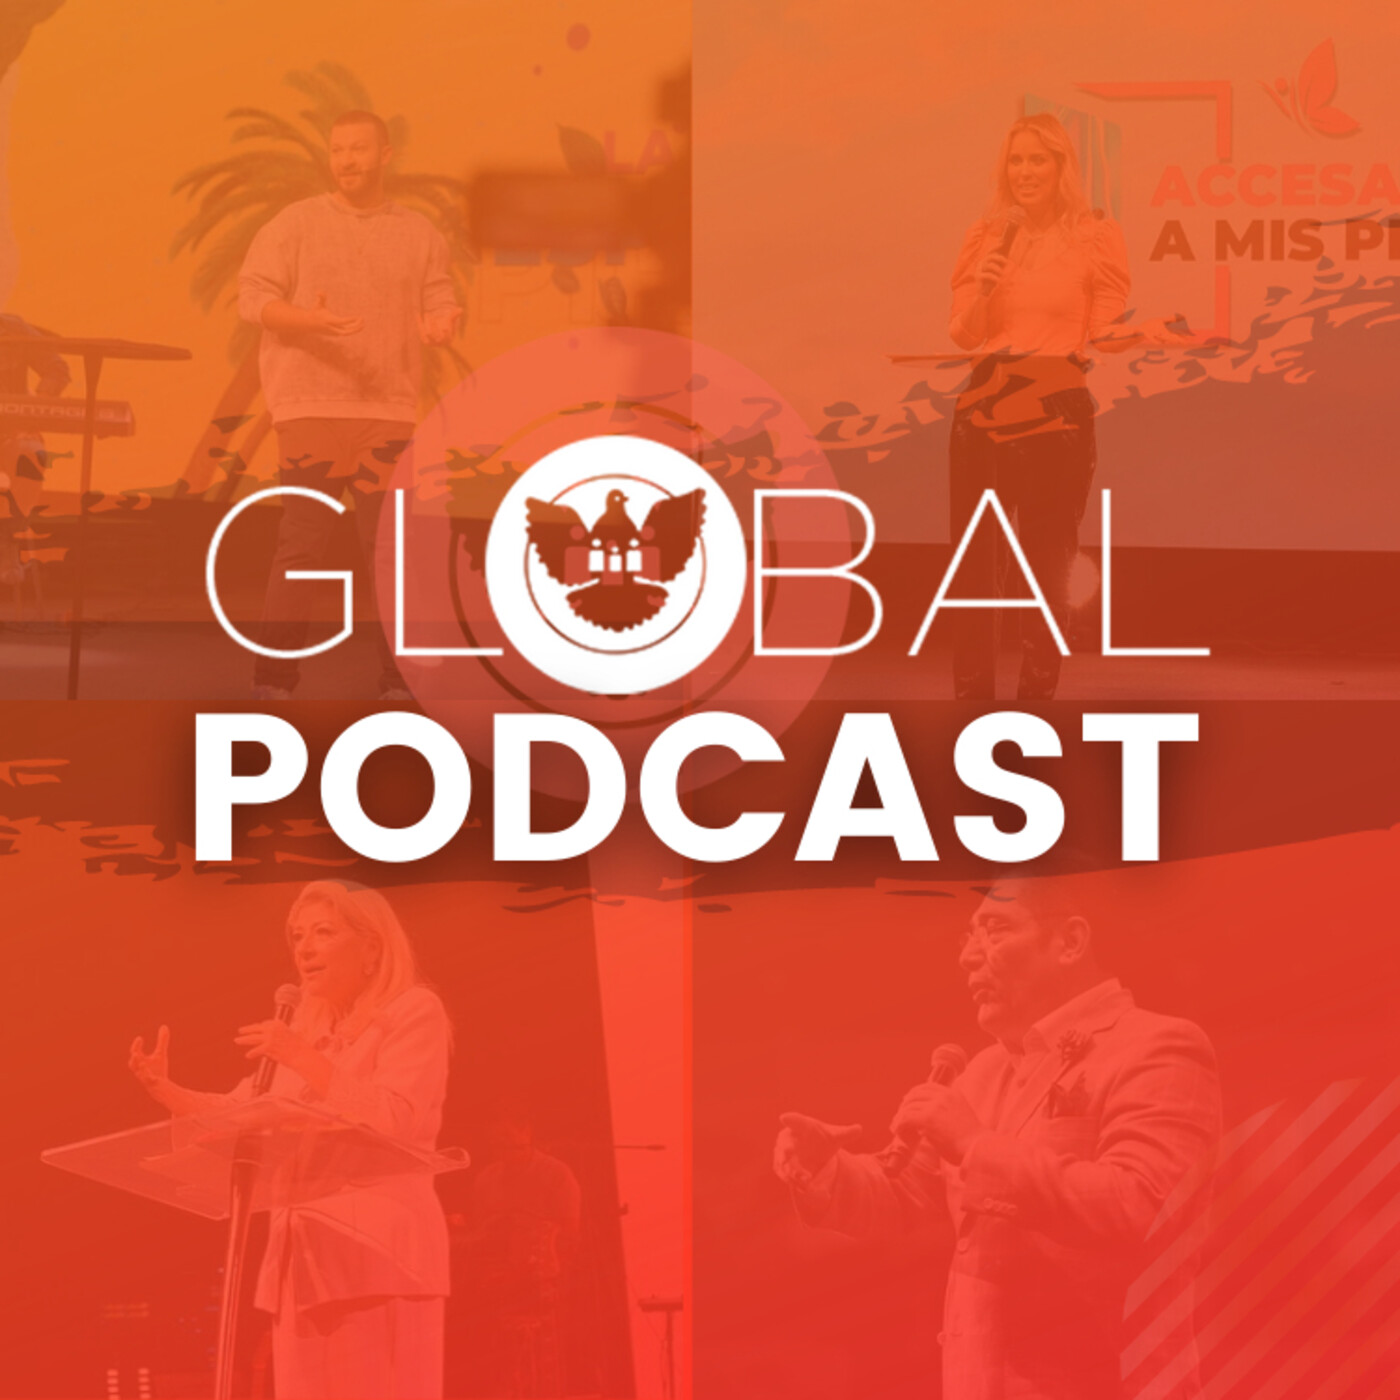 NGI Global Podcast